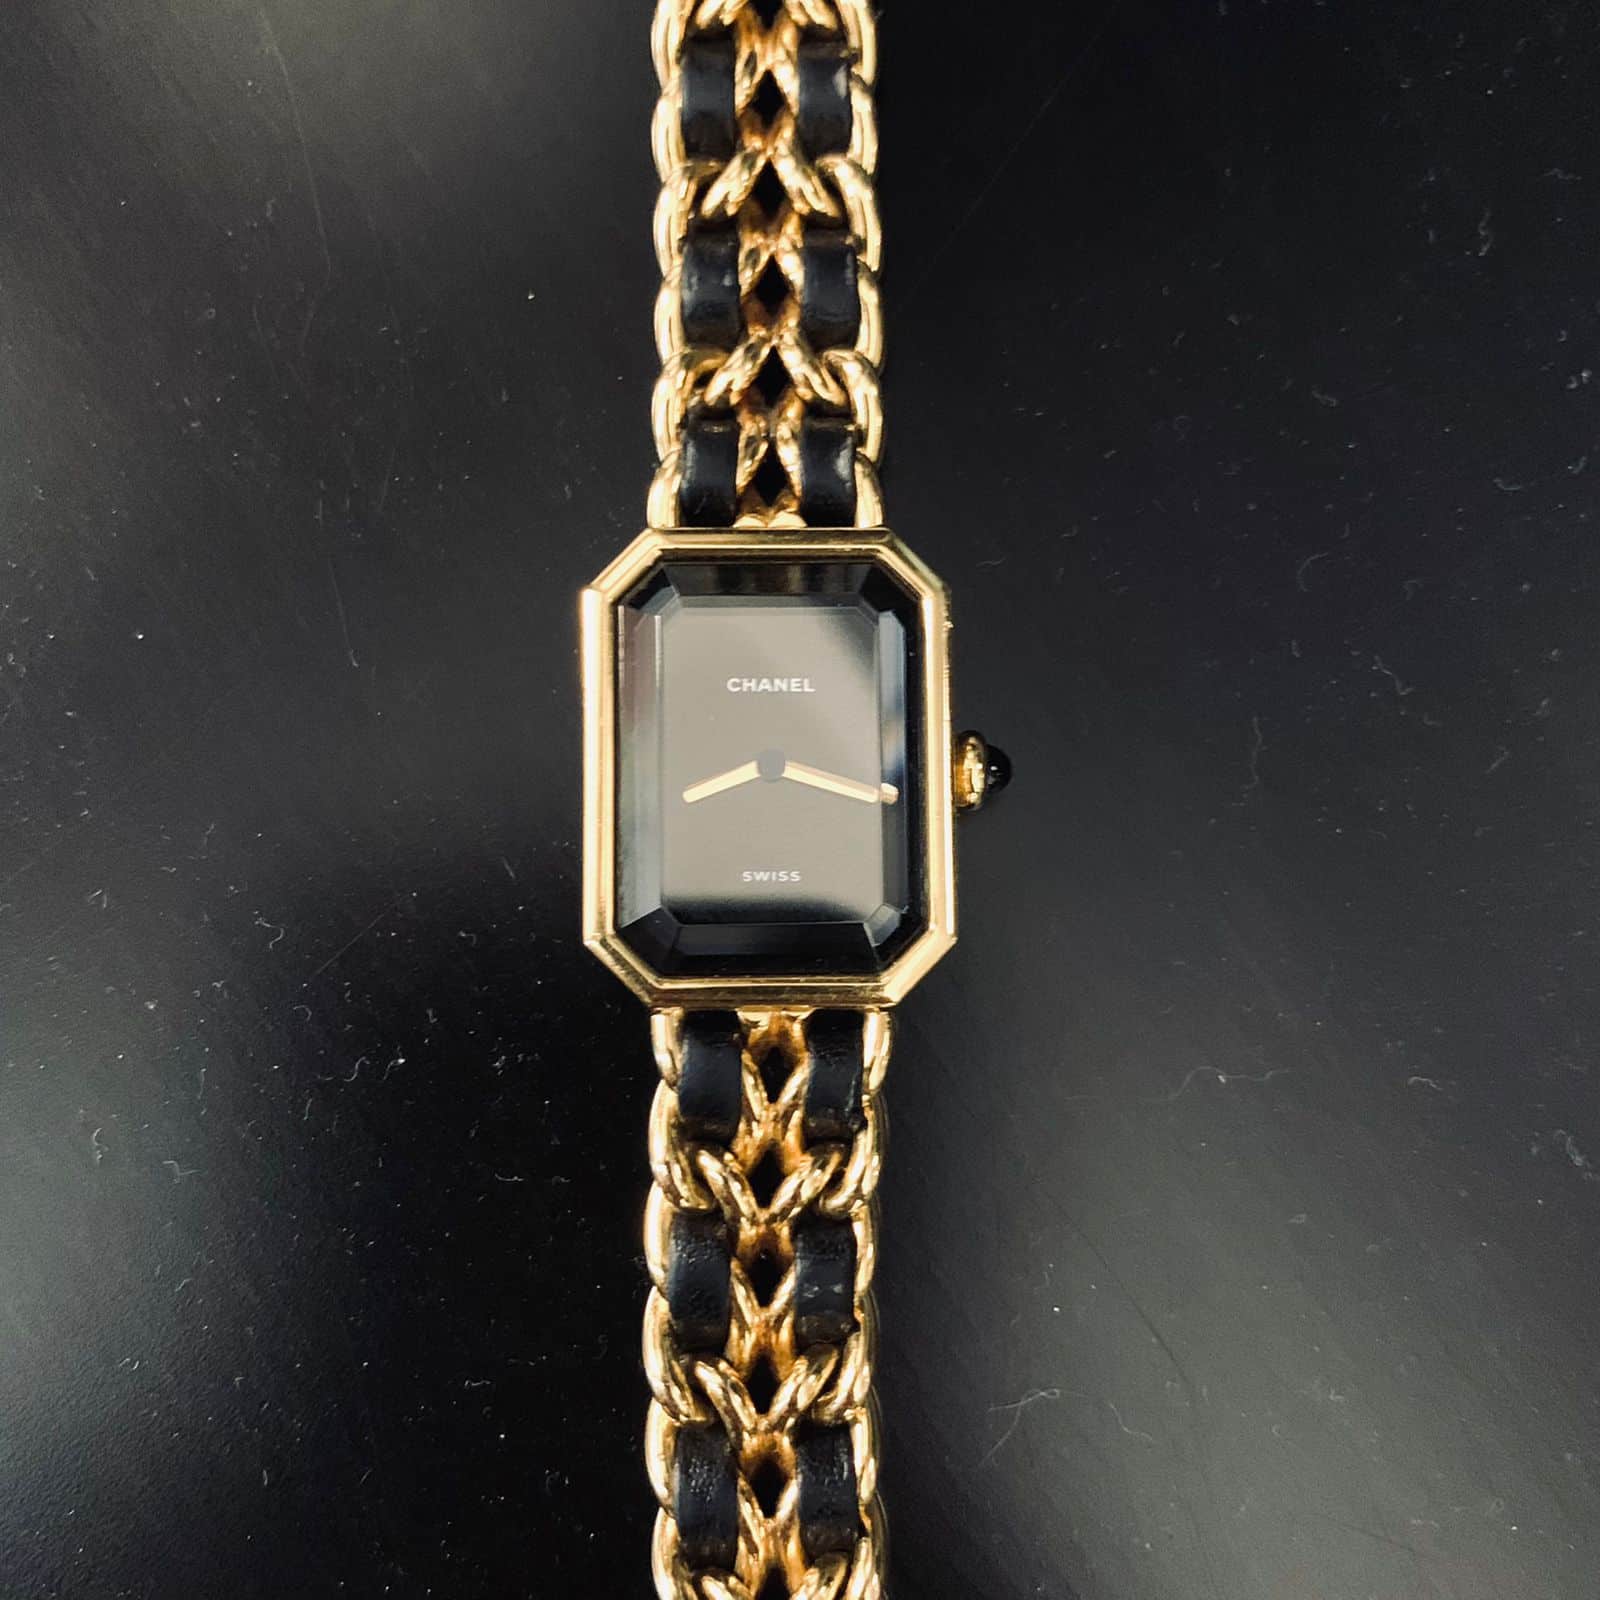 Hermès Farandole Silver Necklace - Designer WishBags